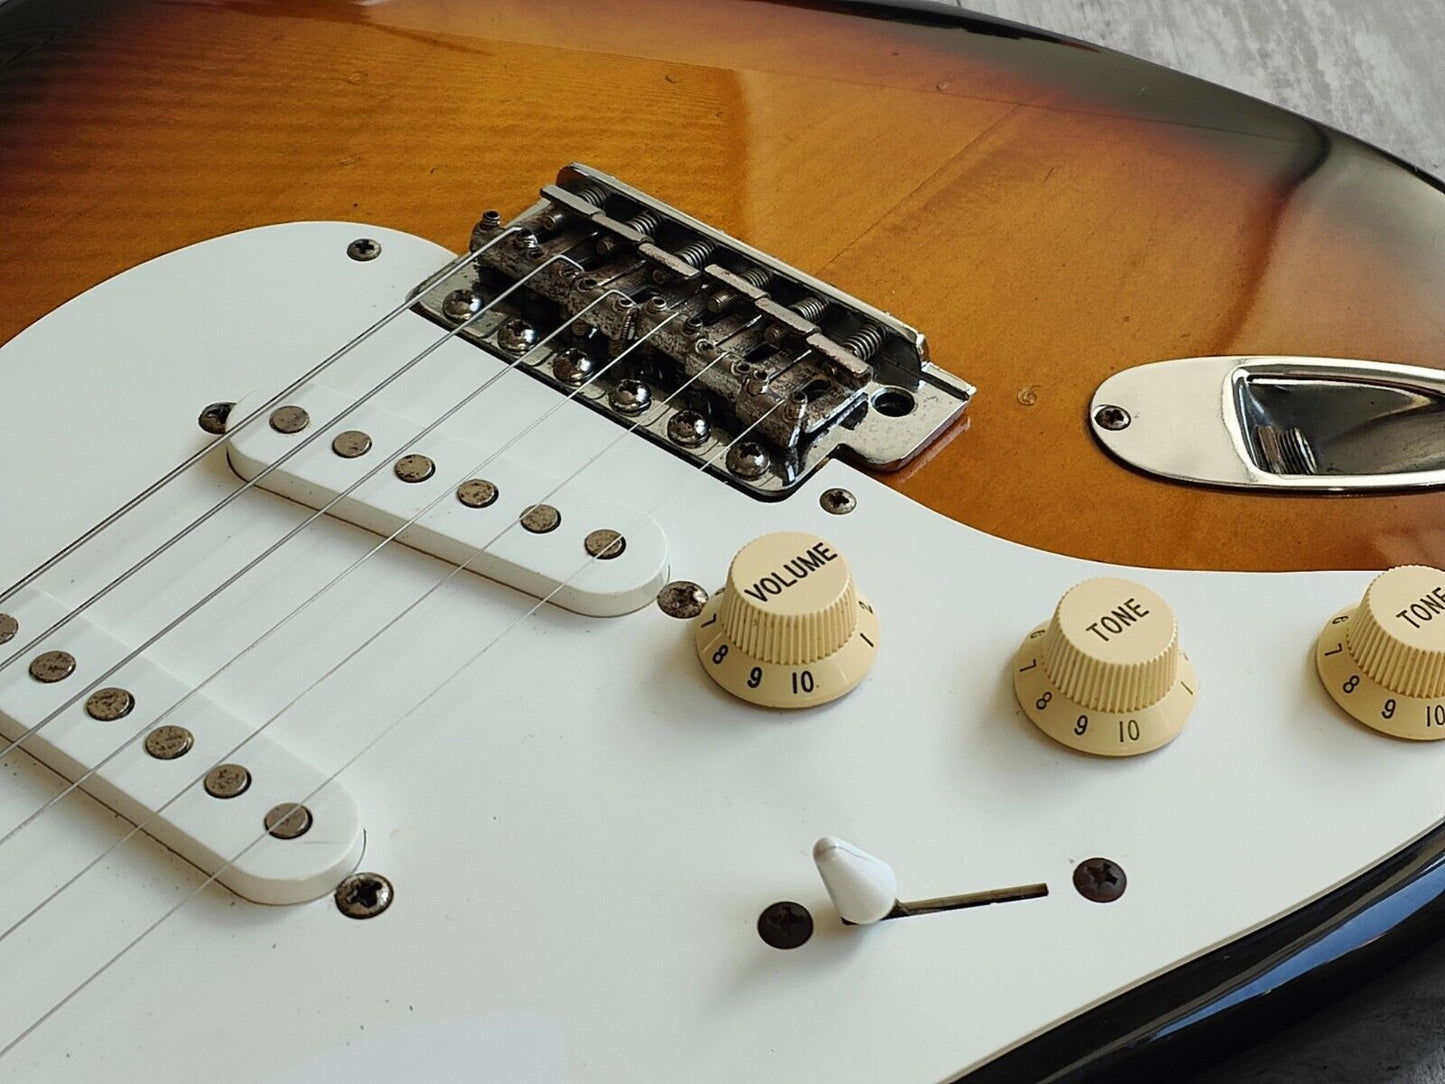 2006 Fender Japan ST57-72L LH Left Handed '57 Reissue Stratocaster (Sunburst)